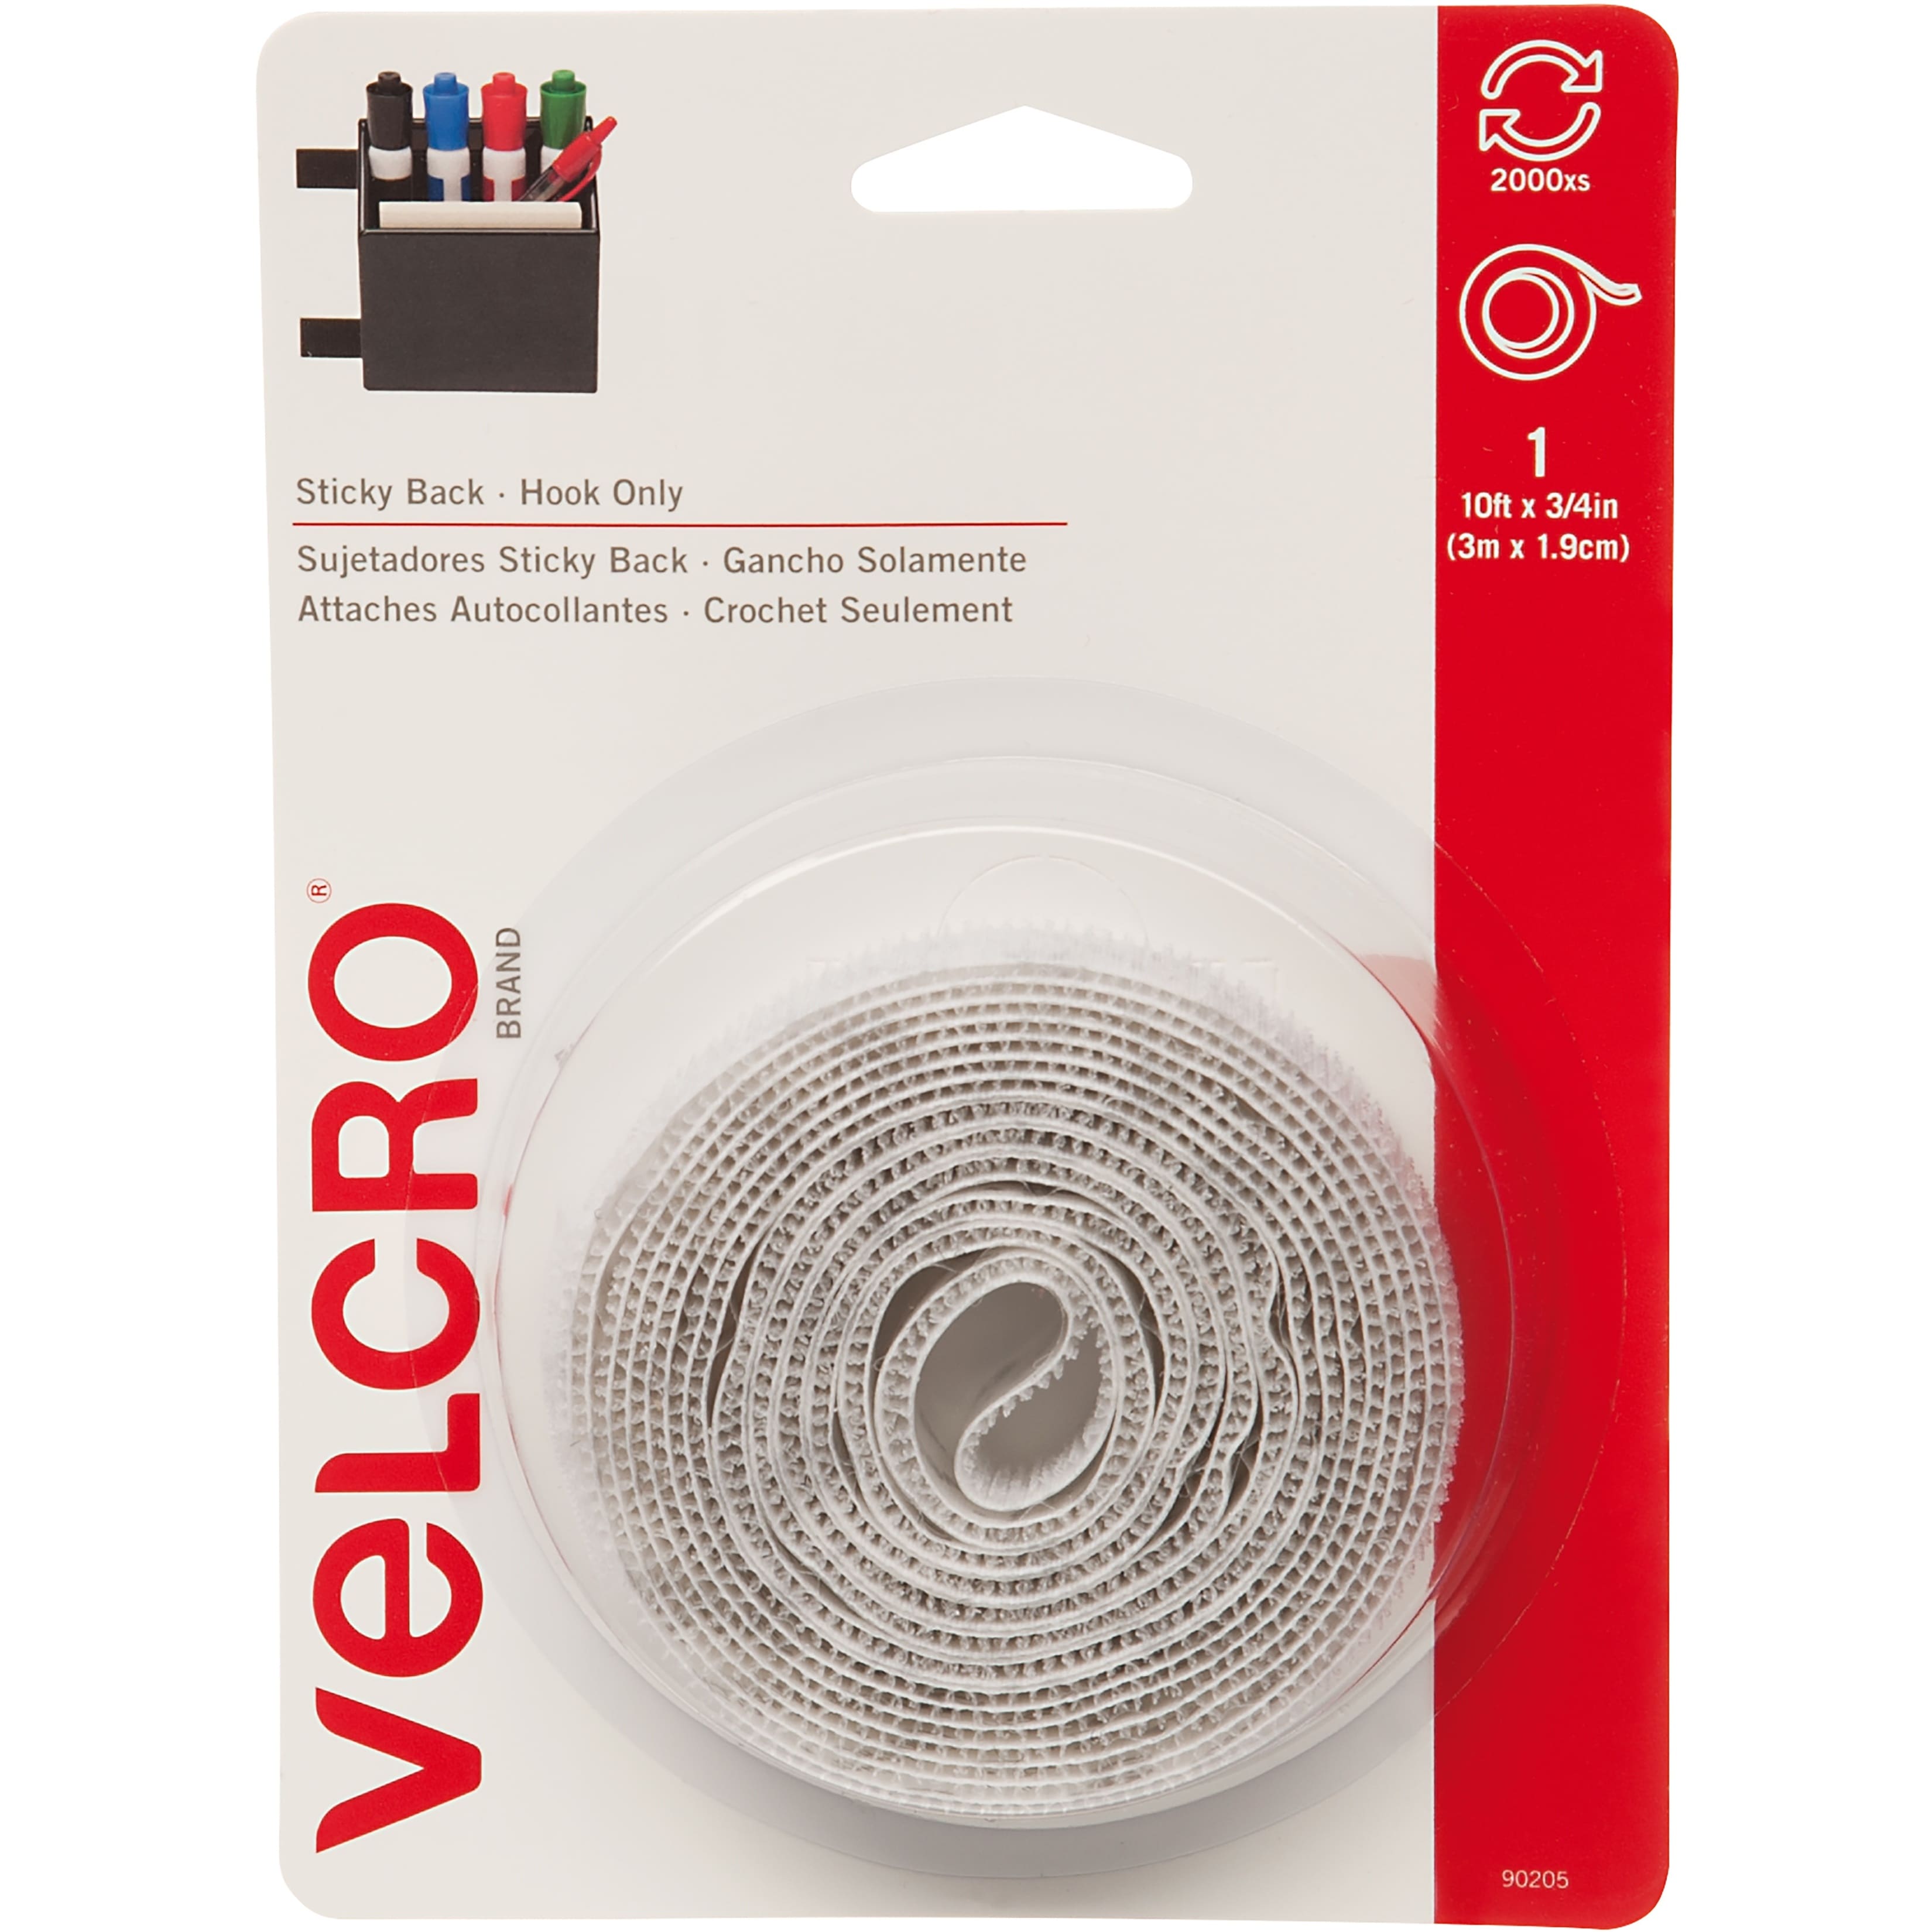  VELCRO Brand Sticky Back Tape